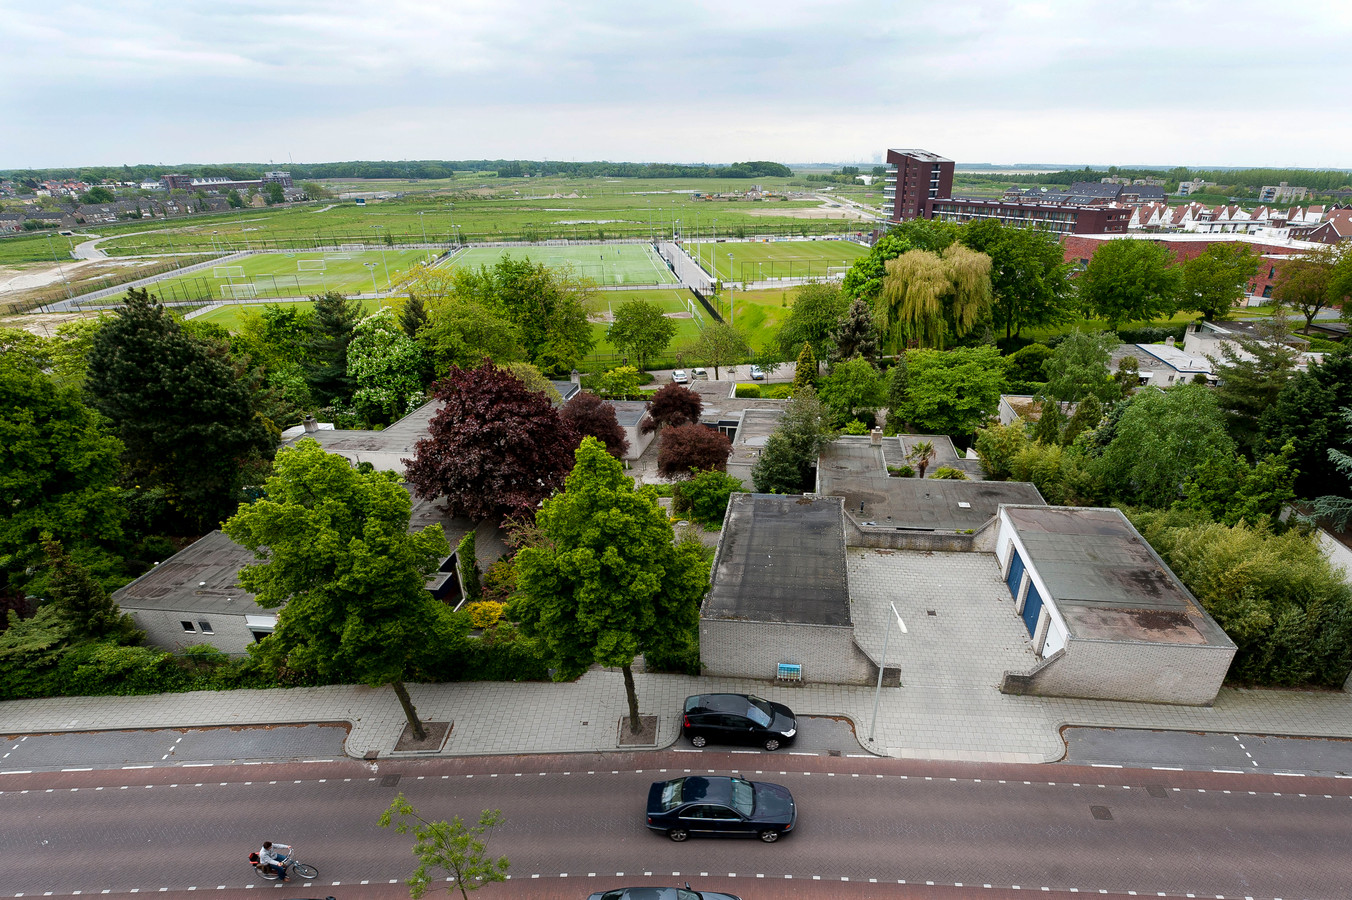 Sportpark De Markiezaten, gezien vanaf de Augustalaan. In de lege ruimte ten zuiden van de voetbalvelden moet Meander II tot ontwikkeling komen, in 2020 en 2021 te beginnen met een buurtje met zo'n 80 woningen die ontwikkelaar BPD wil realiseren.